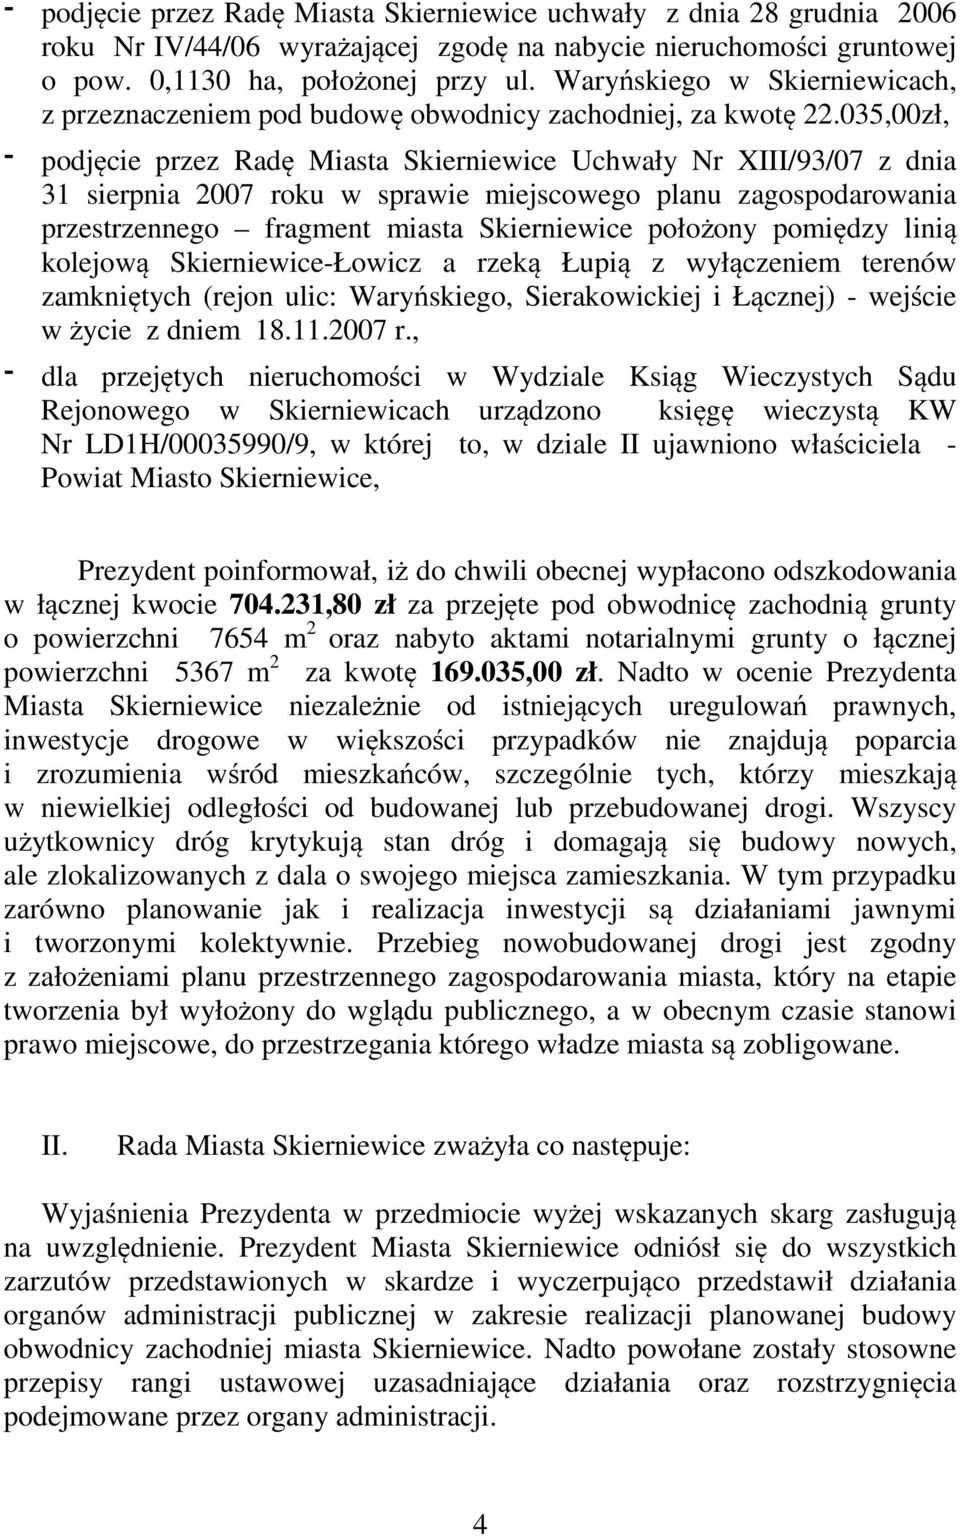 035,00zł, podjęcie przez Radę Miasta Skierniewice Uchwały Nr XIII/93/07 z dnia 31 sierpnia 2007 roku w sprawie miejscowego planu zagospodarowania przestrzennego fragment miasta Skierniewice położony